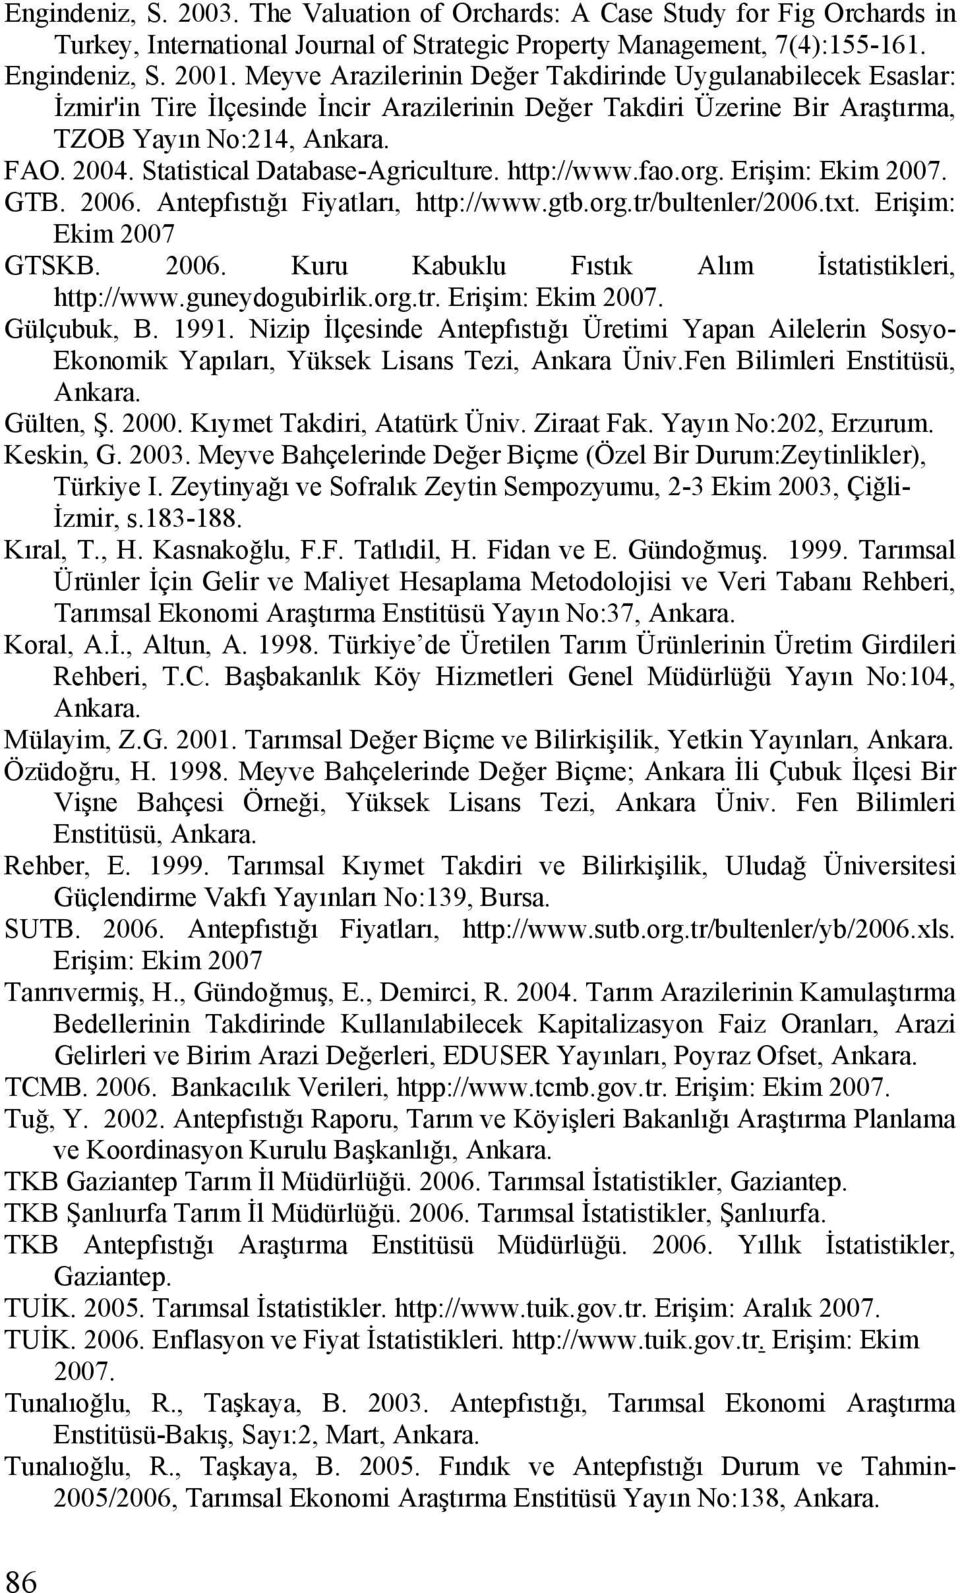 Statistical Database-Agriculture. http://www.fao.org. Erişim: Ekim 2007. GTB. 2006. Antepfıstığı Fiyatları, http://www.gtb.org.tr/bultenler/2006.txt. Erişim: Ekim 2007 GTSKB. 2006. Kuru Kabuklu Fıstık Alım İstatistikleri, http://www.